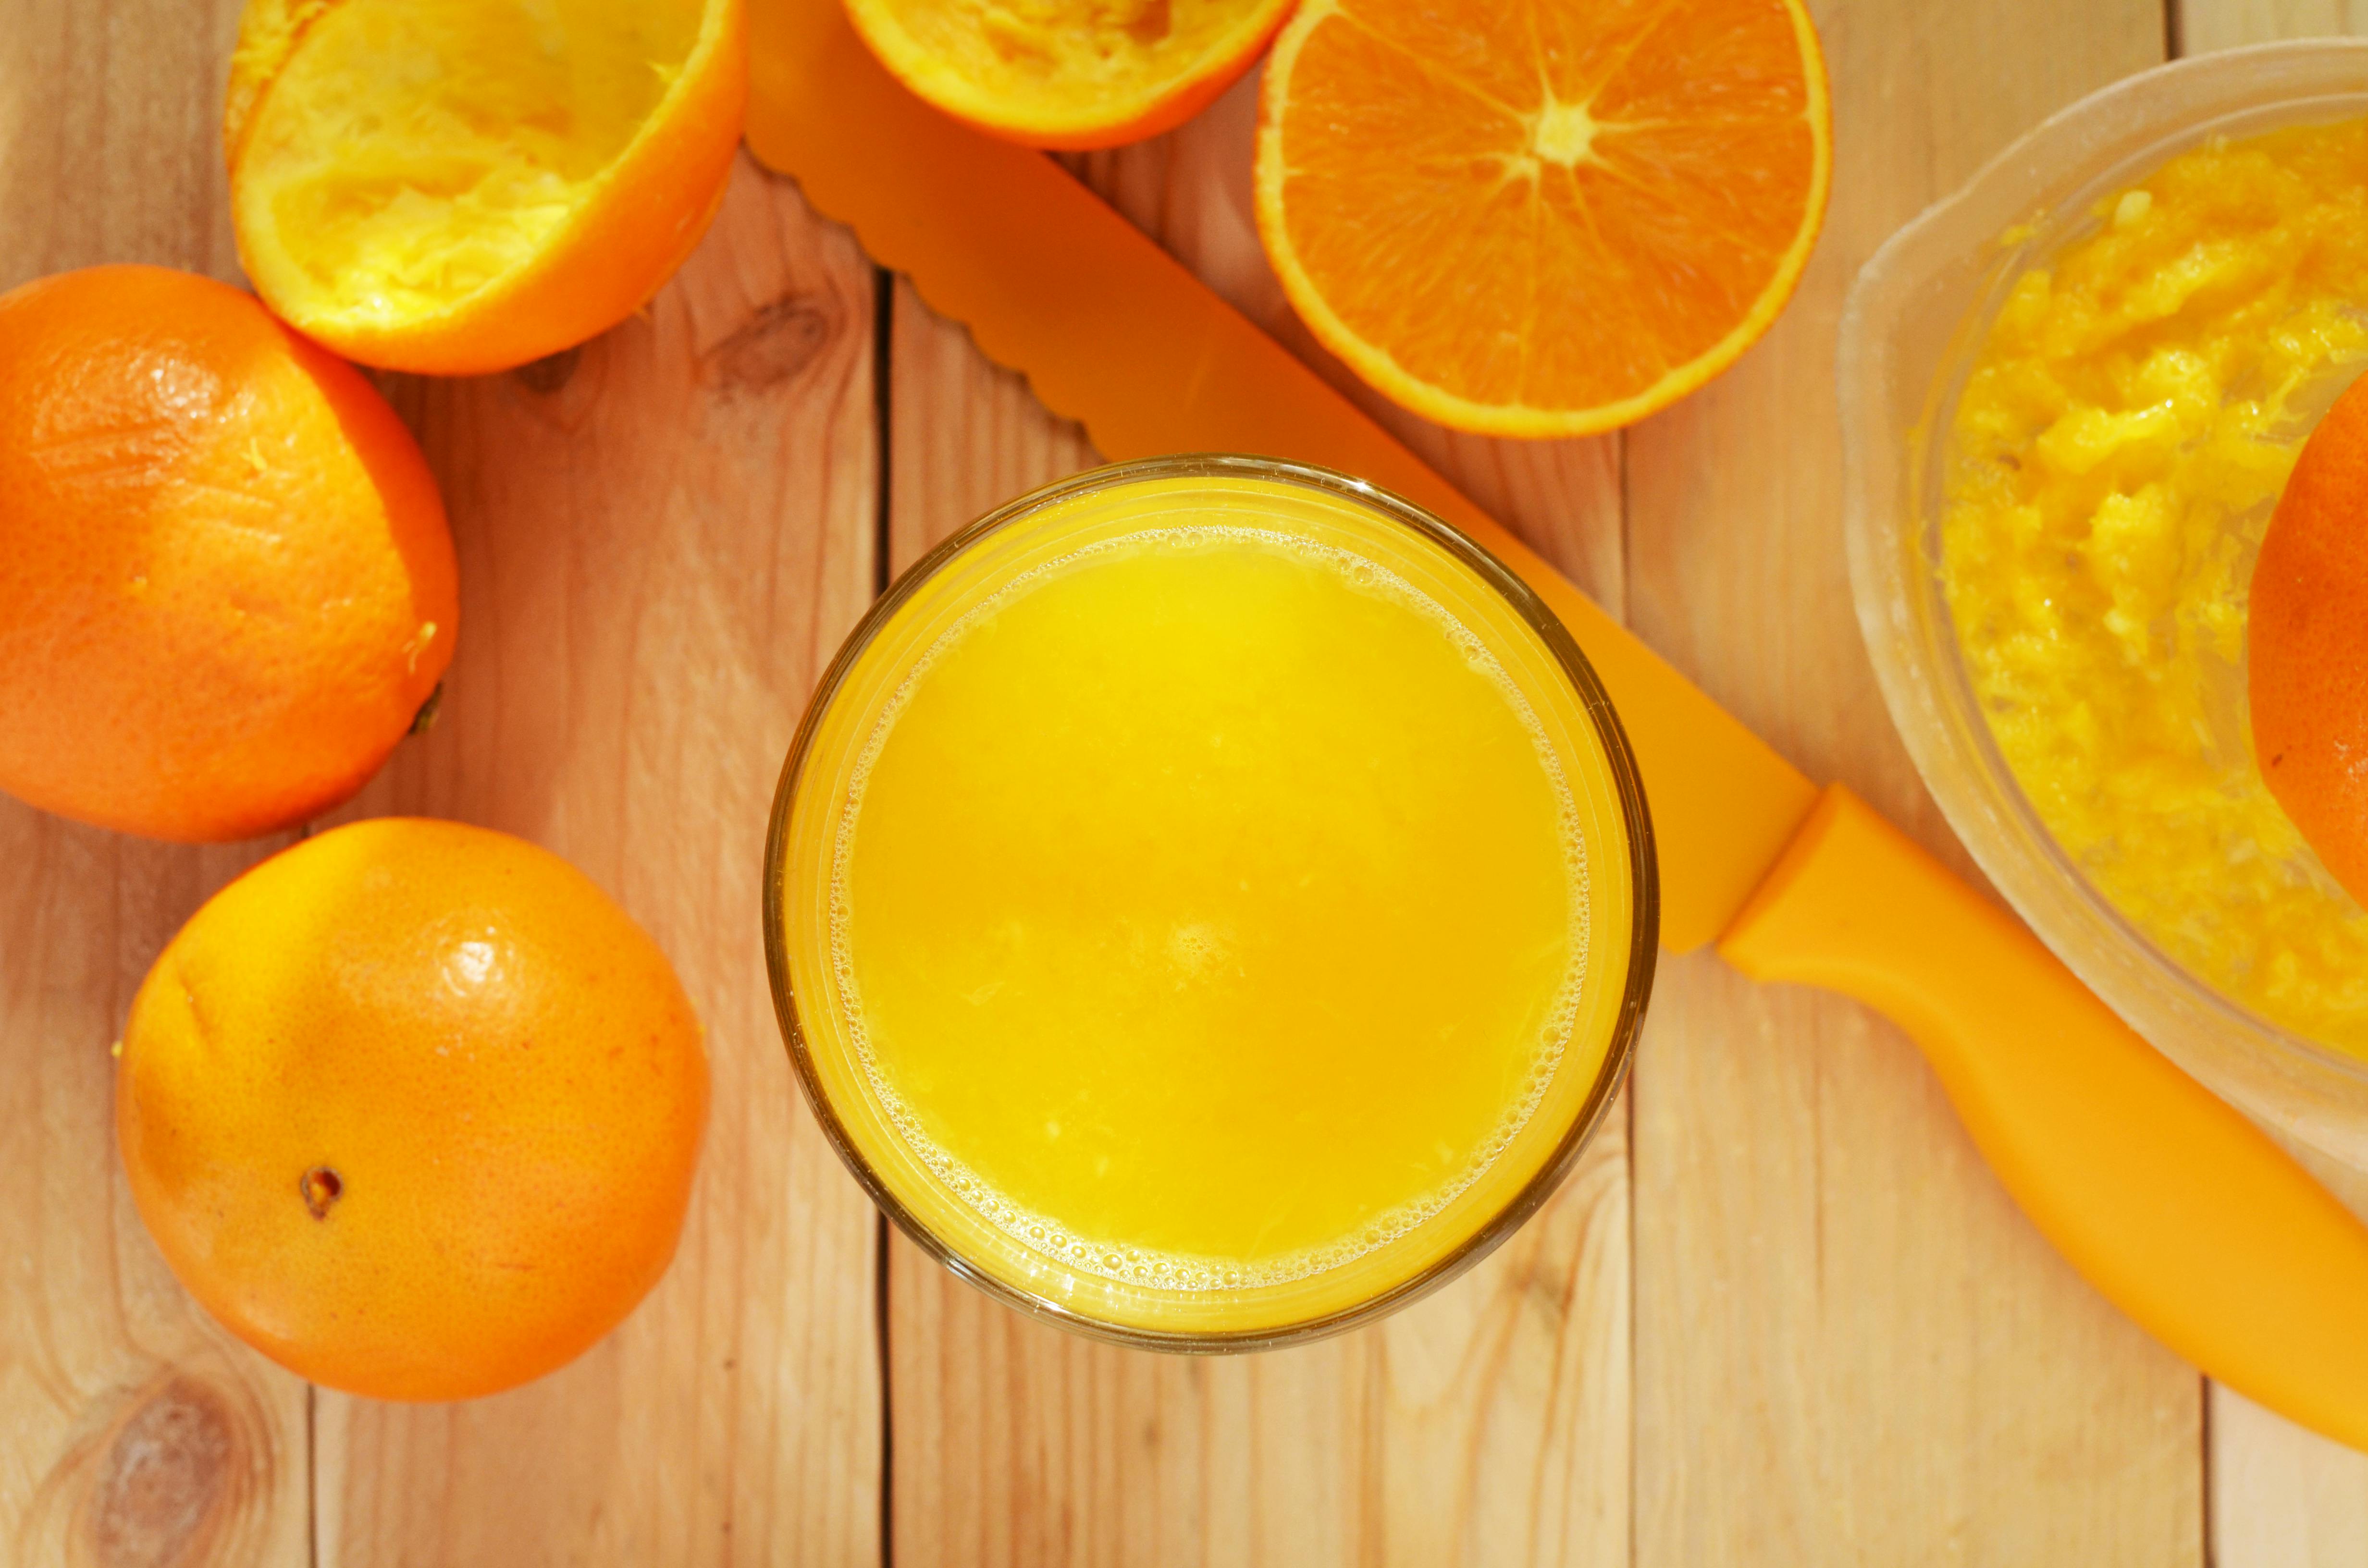 soki na diecie sok pomarańczowy